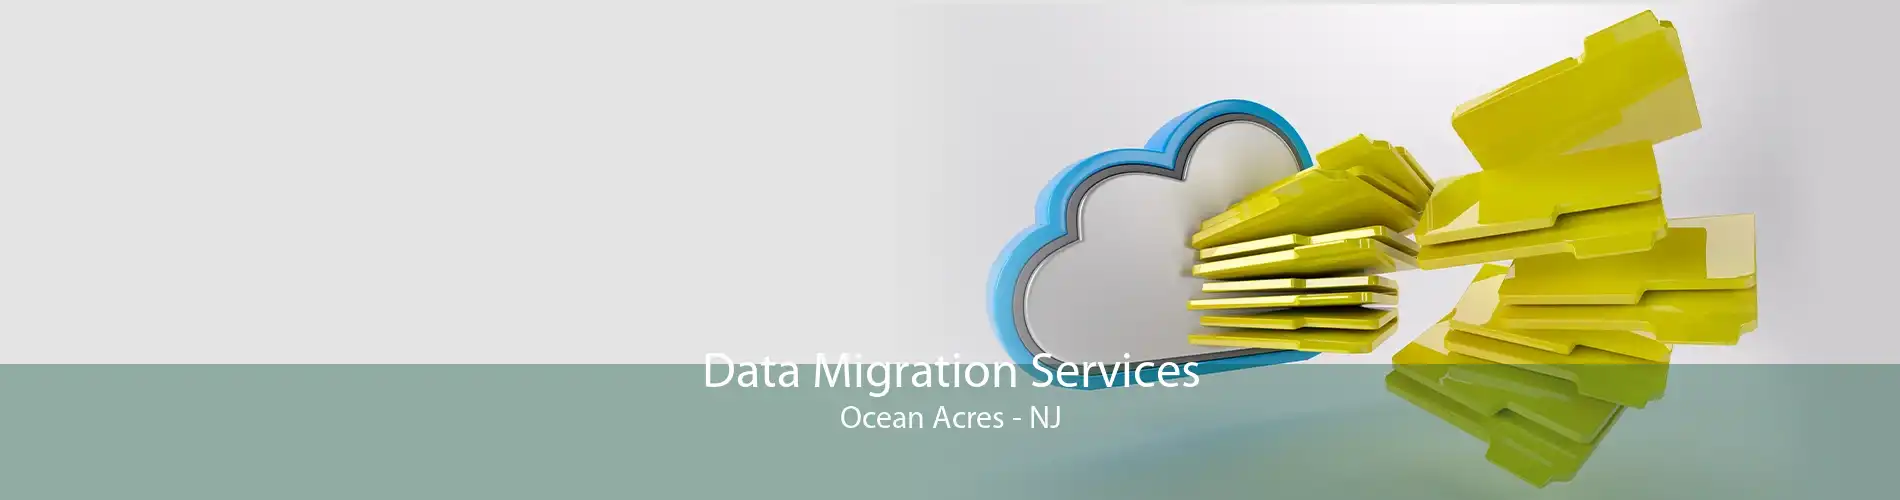 Data Migration Services Ocean Acres - NJ